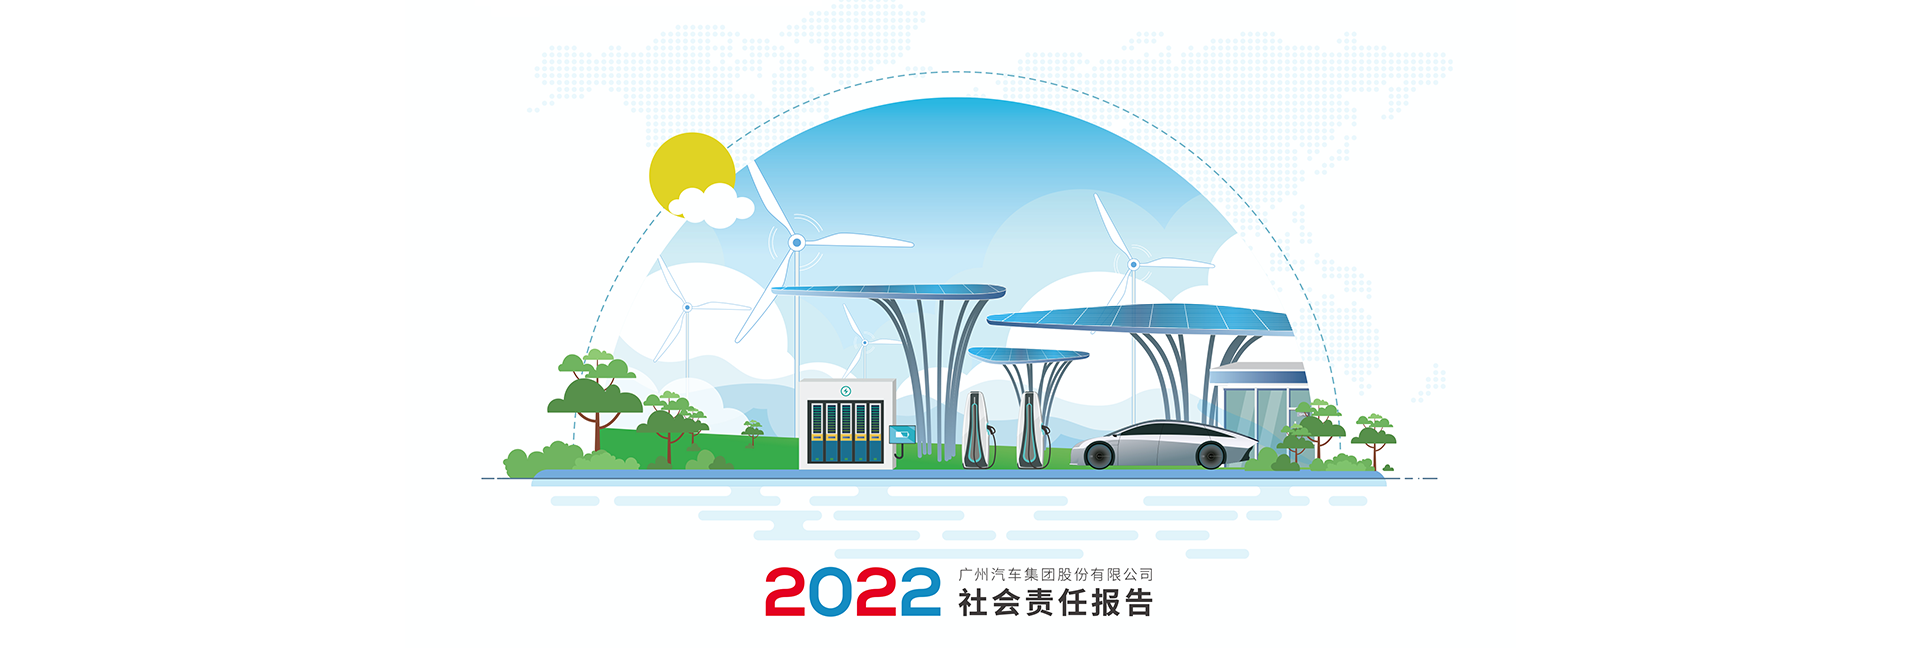 买球(中国)官方网站,手机APP下载2023最新2022年社会责任报告